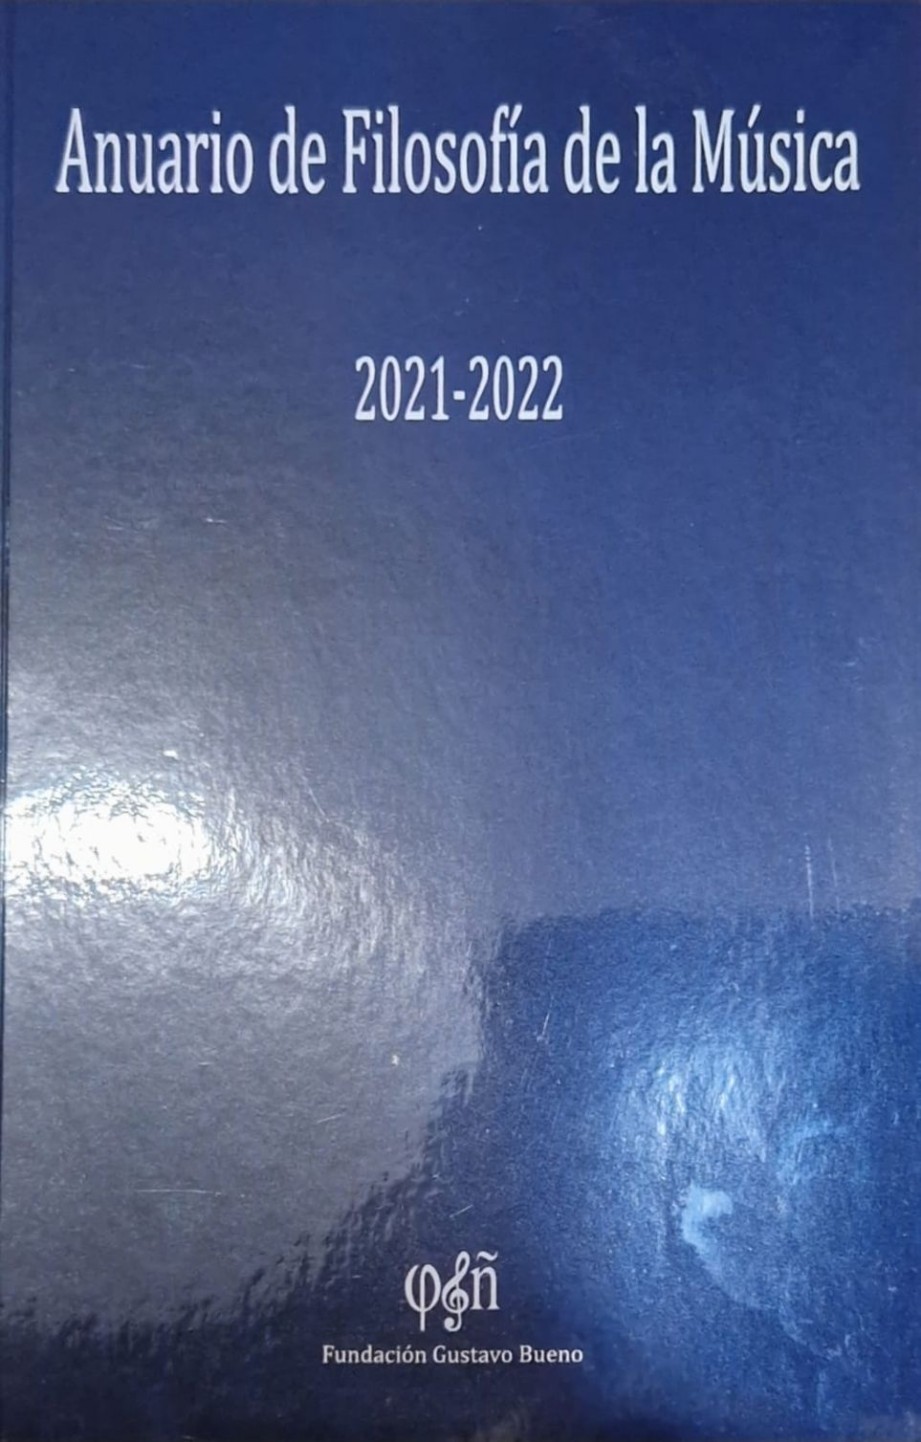 Anuario de Filosofa de la Msica 2021-22 de la Fundacin Gustavo Bueno